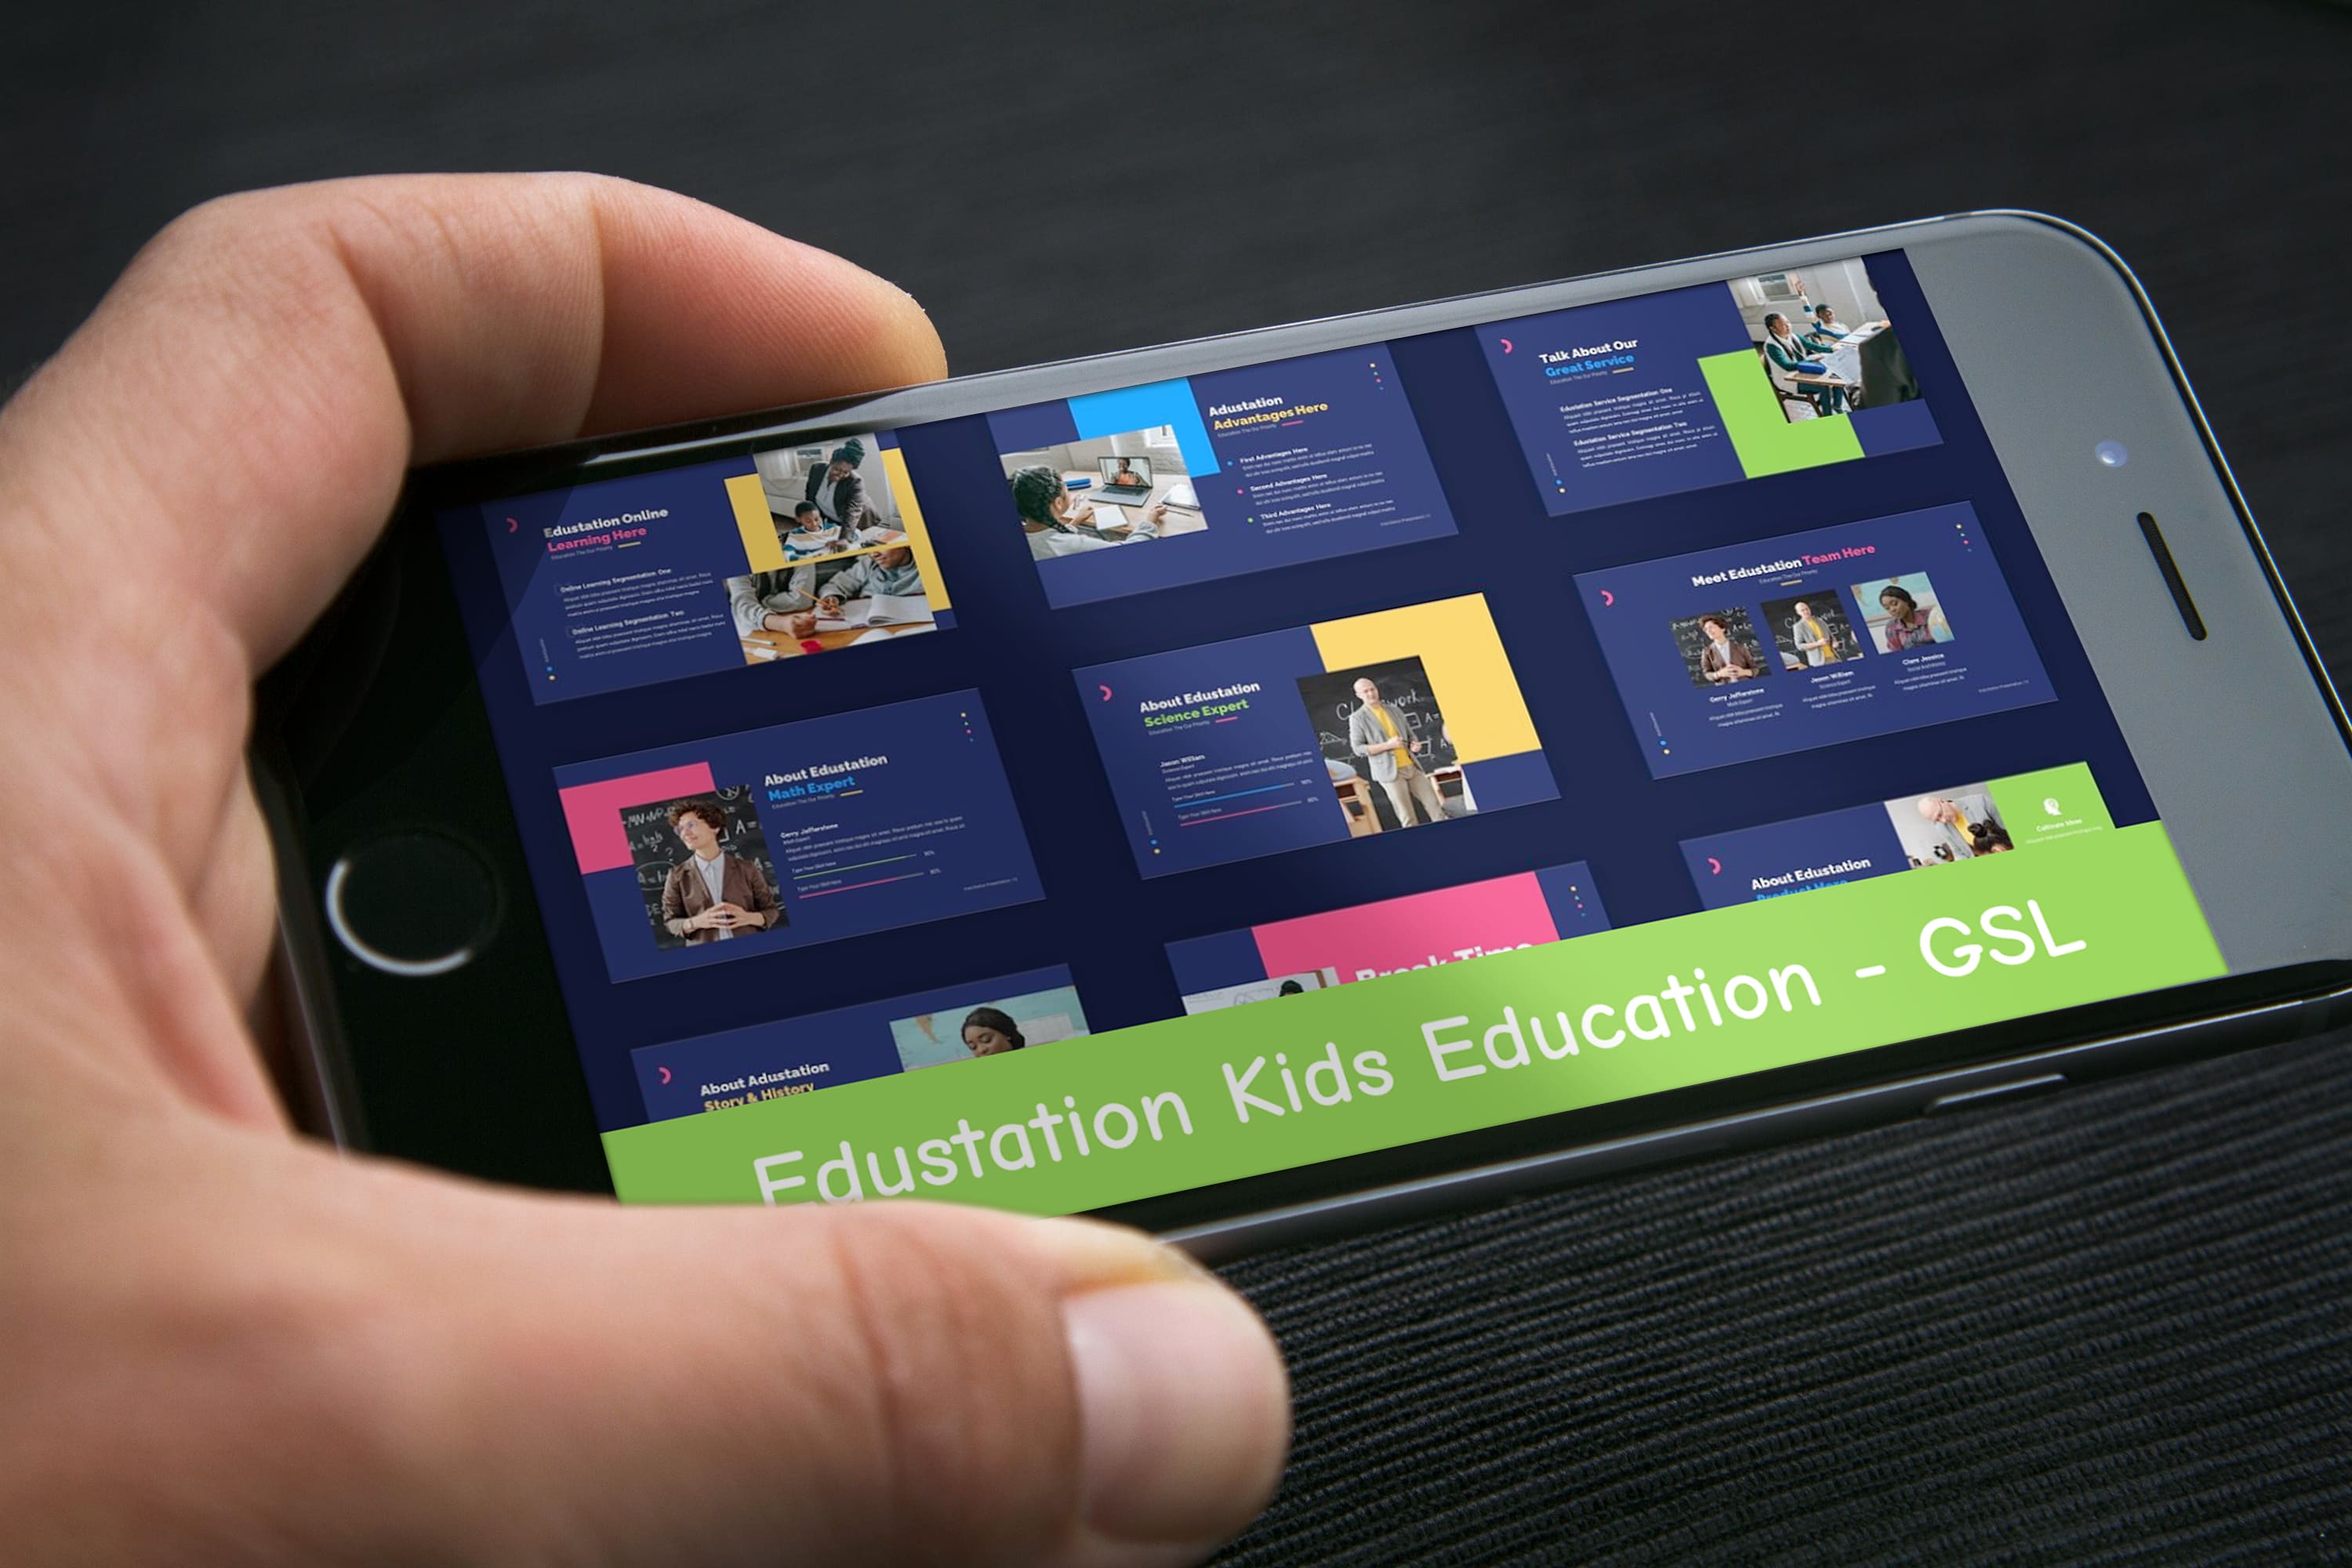 Edustation Kids Education - GSL - Mockup on Smartphone.